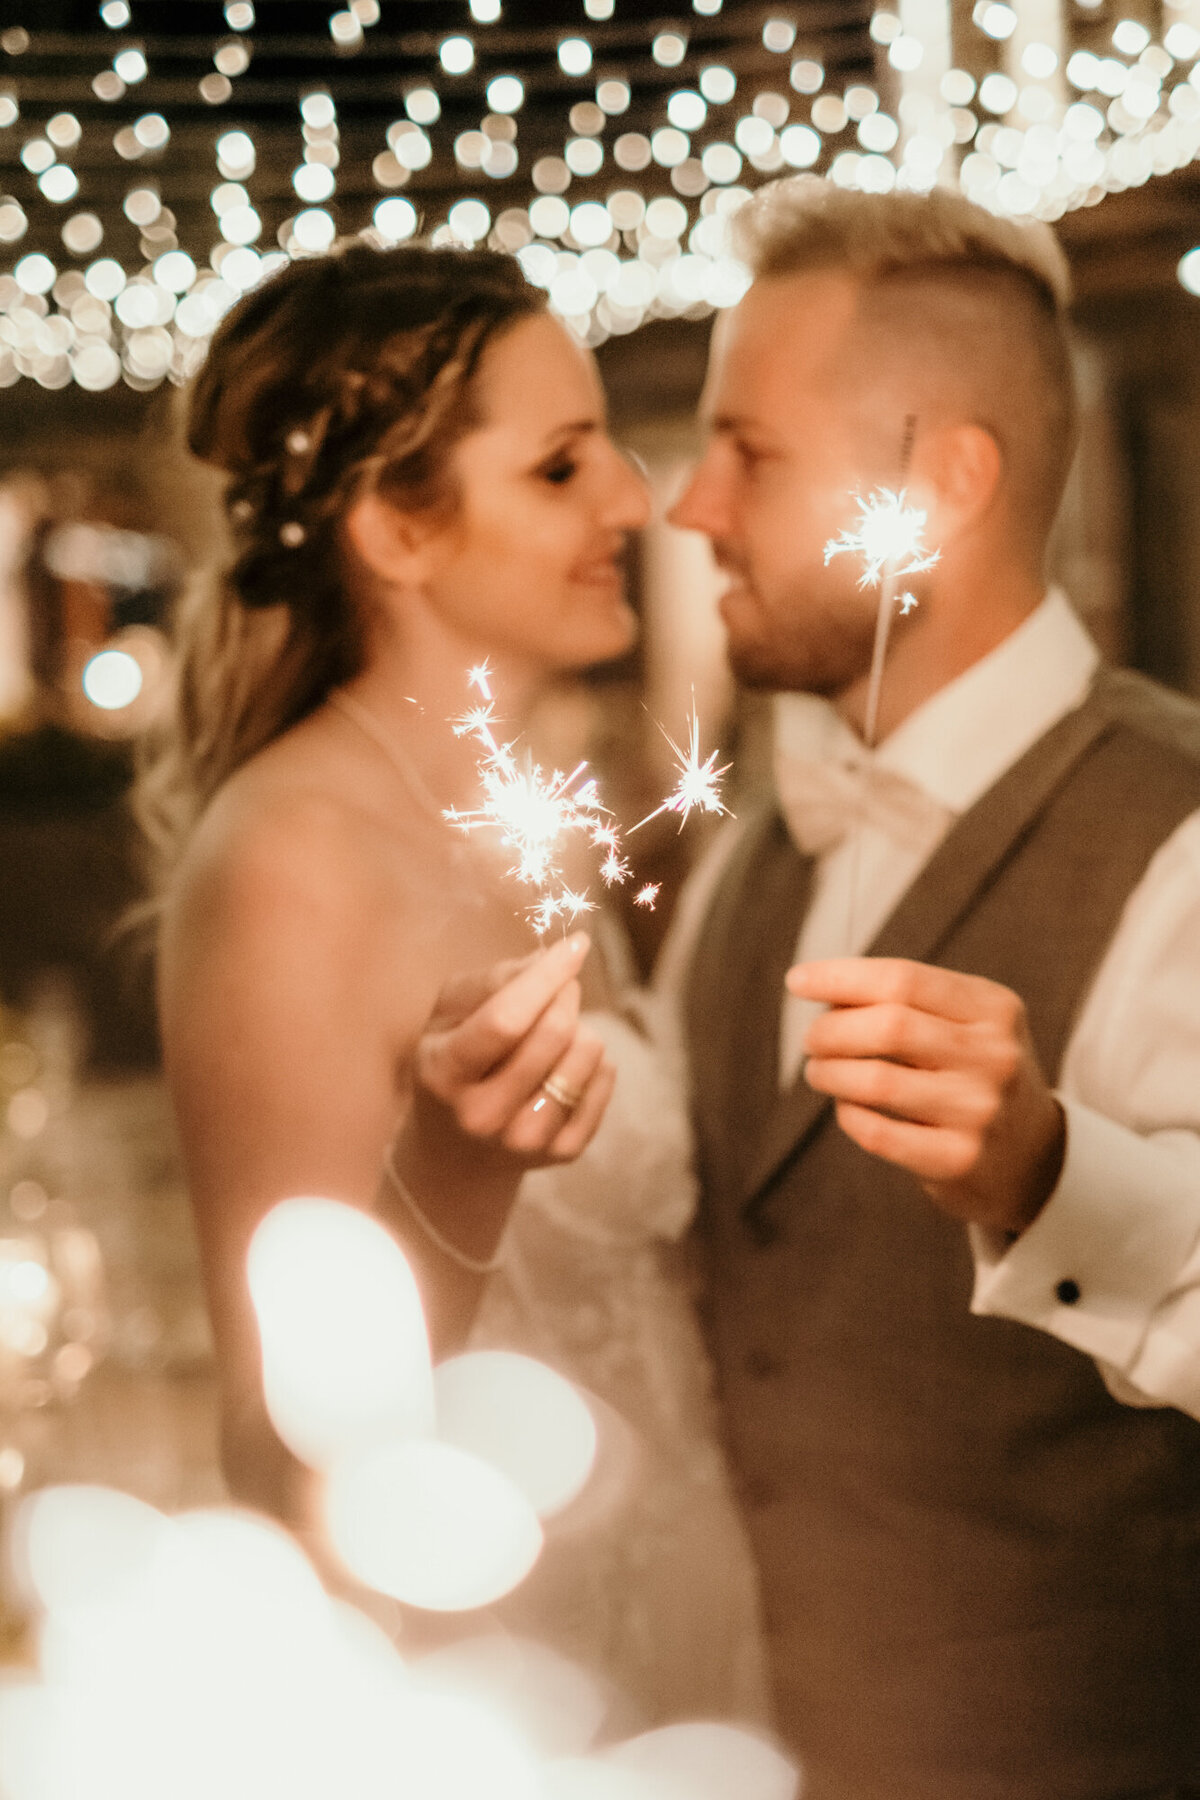 Verliebt blickt sich das Hochzeitspaar umgeben von Lichtern tief in die Augen und hält Wunderkerzen.